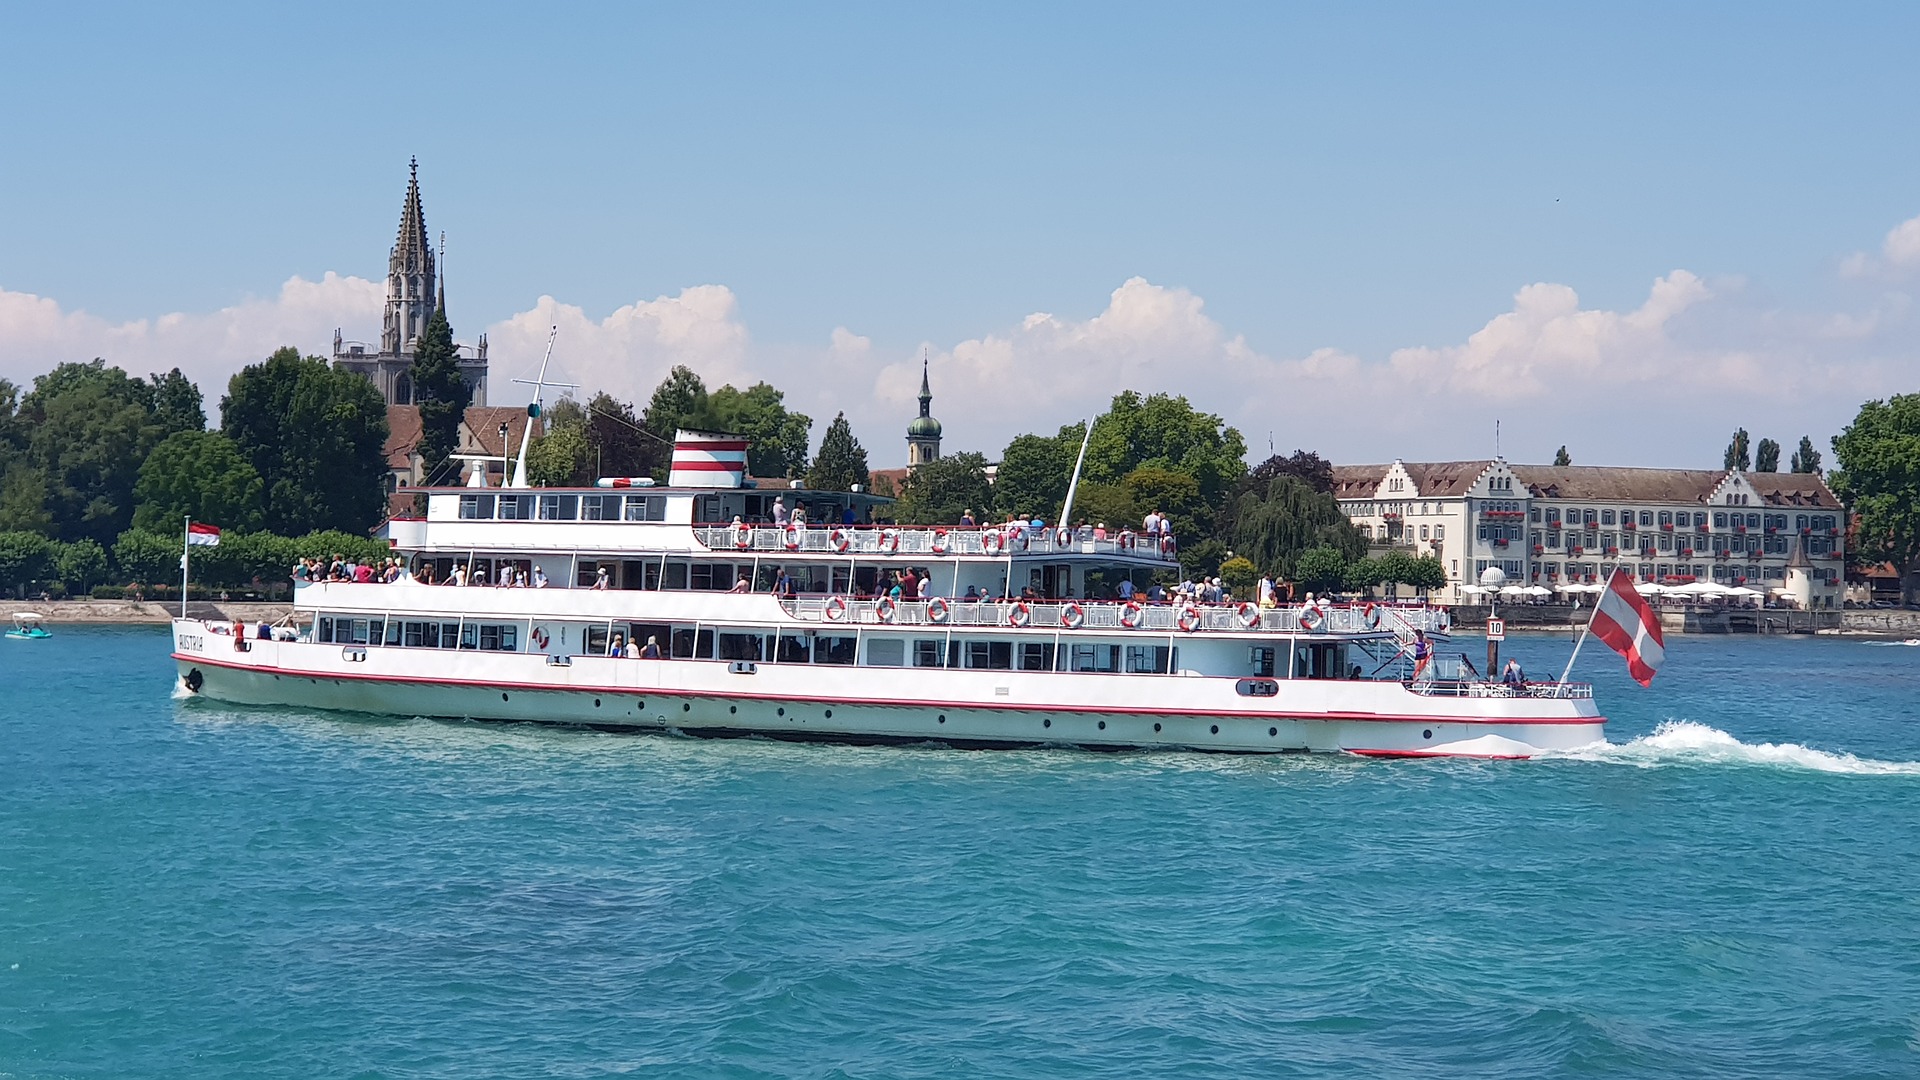 Die Stadt am Bodensee bietet zahlreiche Möglichkeiten den Urlaub zu gestalten